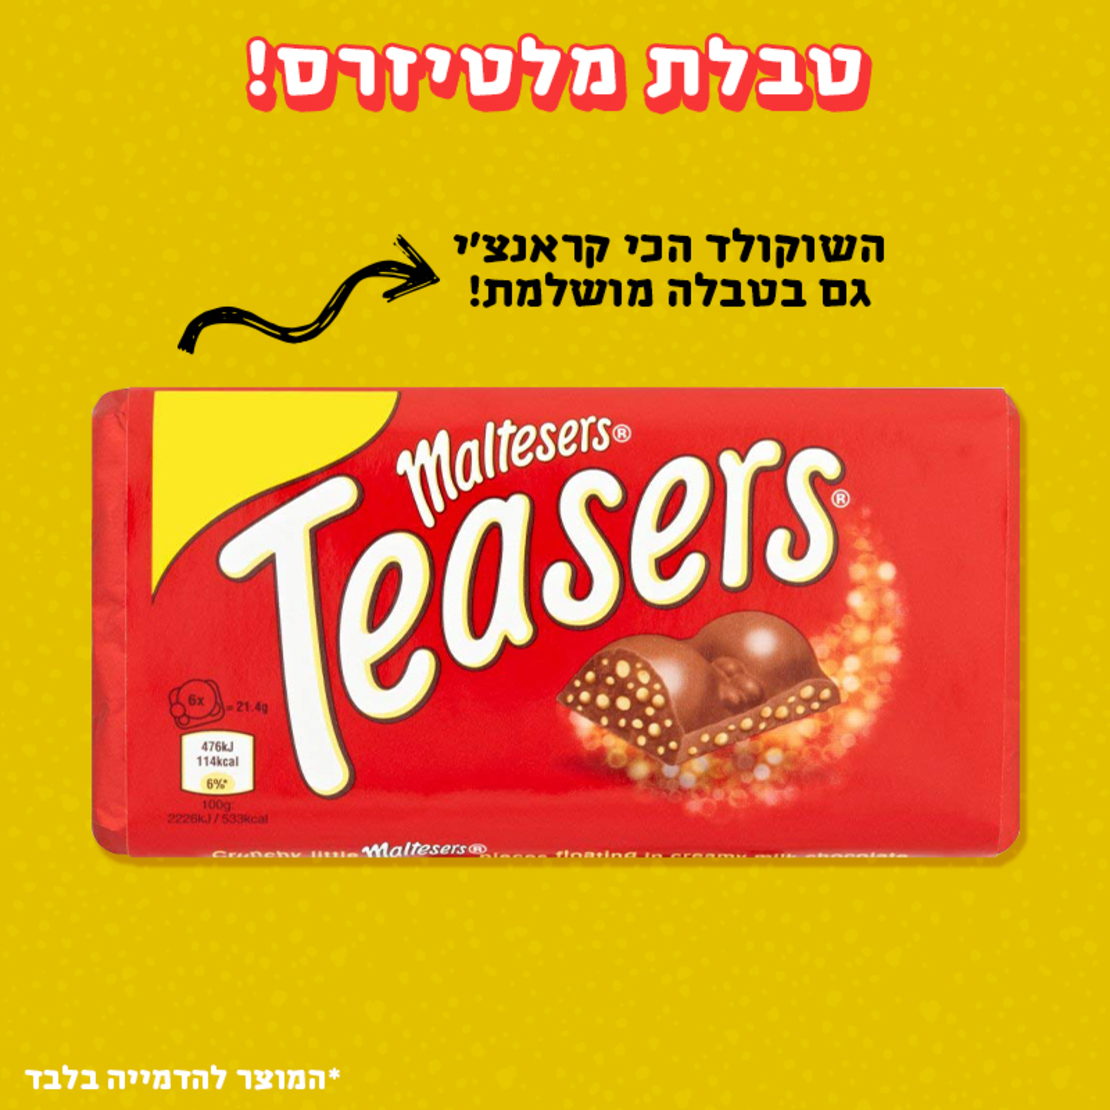 טבלת שוקולד מלטיזרס - Maltesers teasers